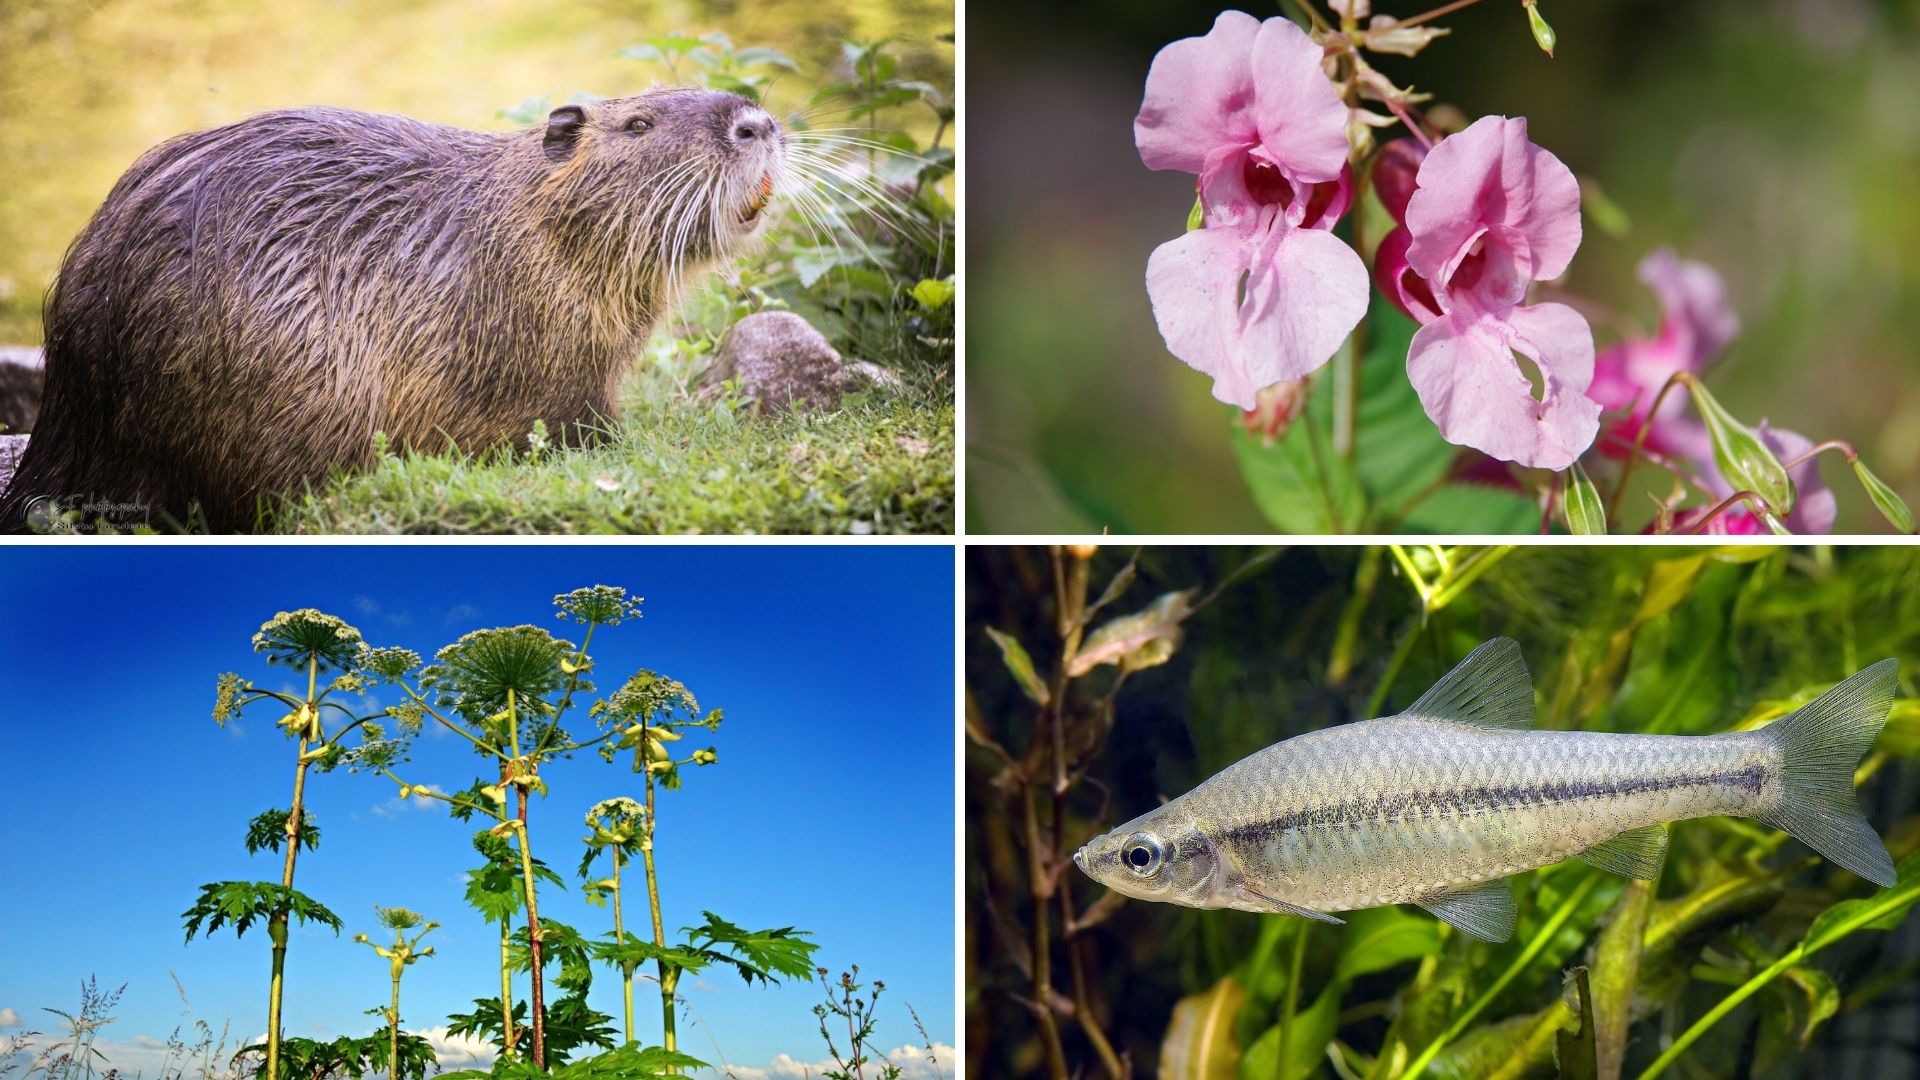 Ministerstvo životního prostředí vydává první zásady regulace invazních nepůvodních druhů. Zaměřují se na dvě škodlivé rostliny v krajině - bolševník velkolepý a pajasan žláznatý